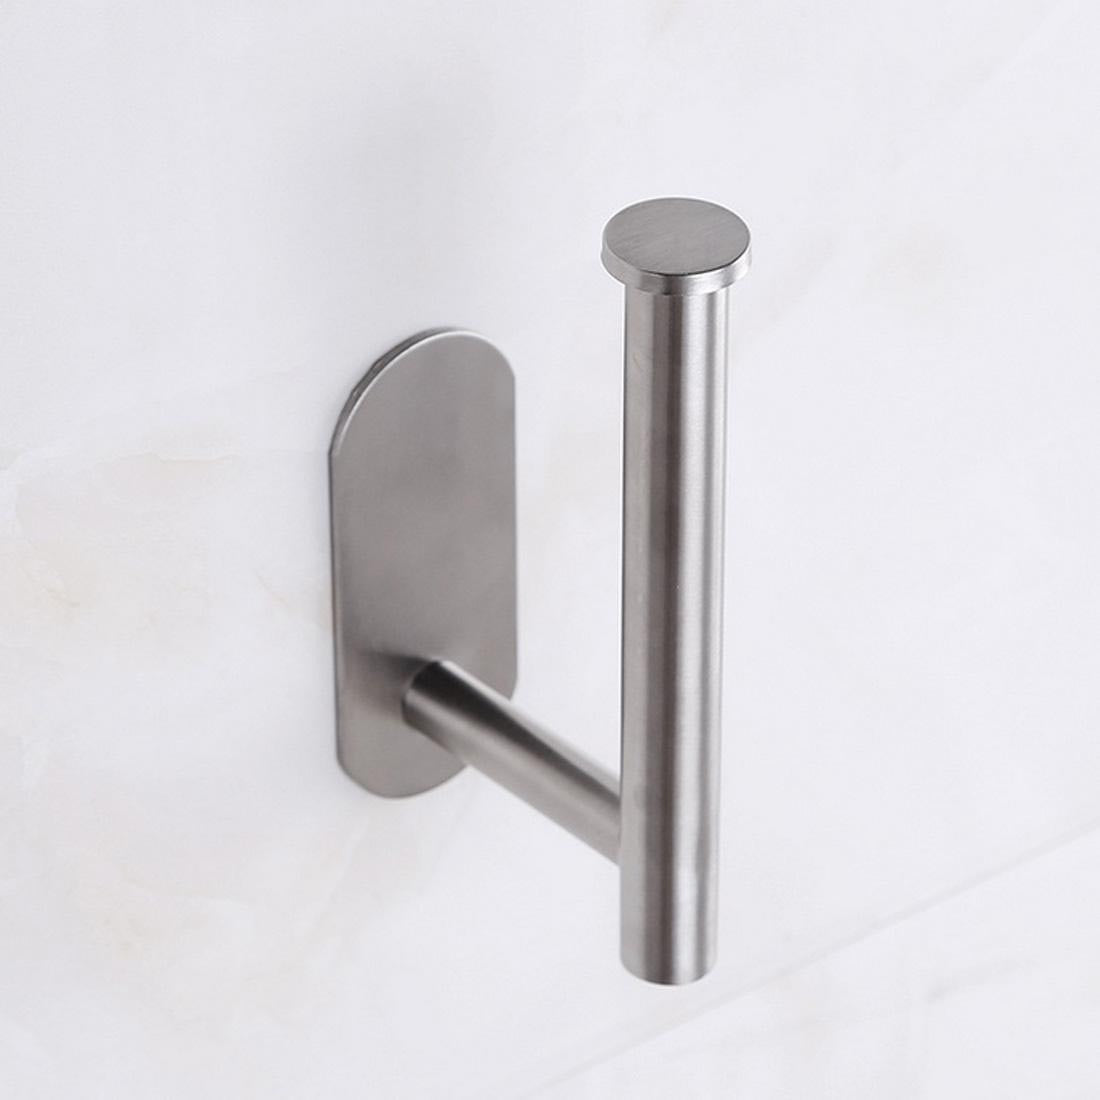 Stainless steel bathroom tissue holder